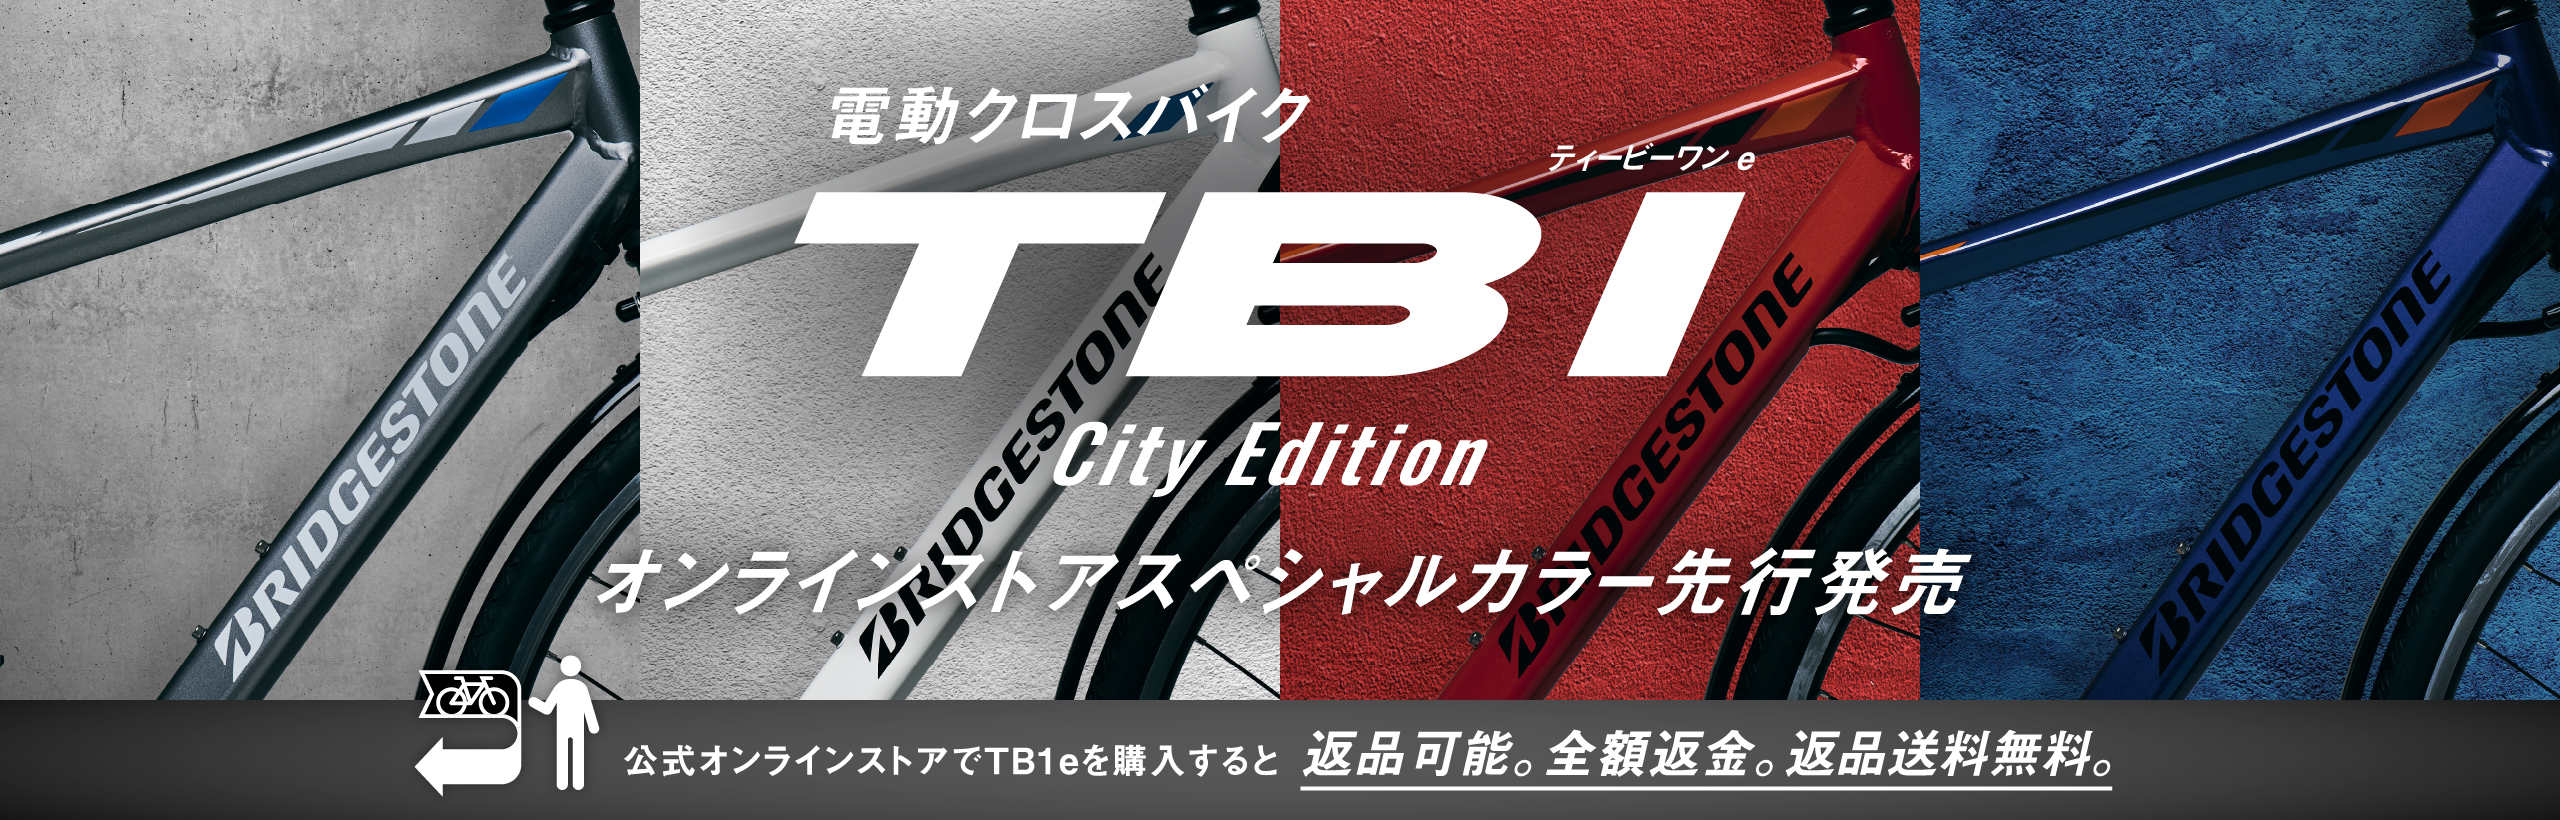 電動クロスバイク ティービーワン e City Edition オンラインストア スペシャルカラー先行発売